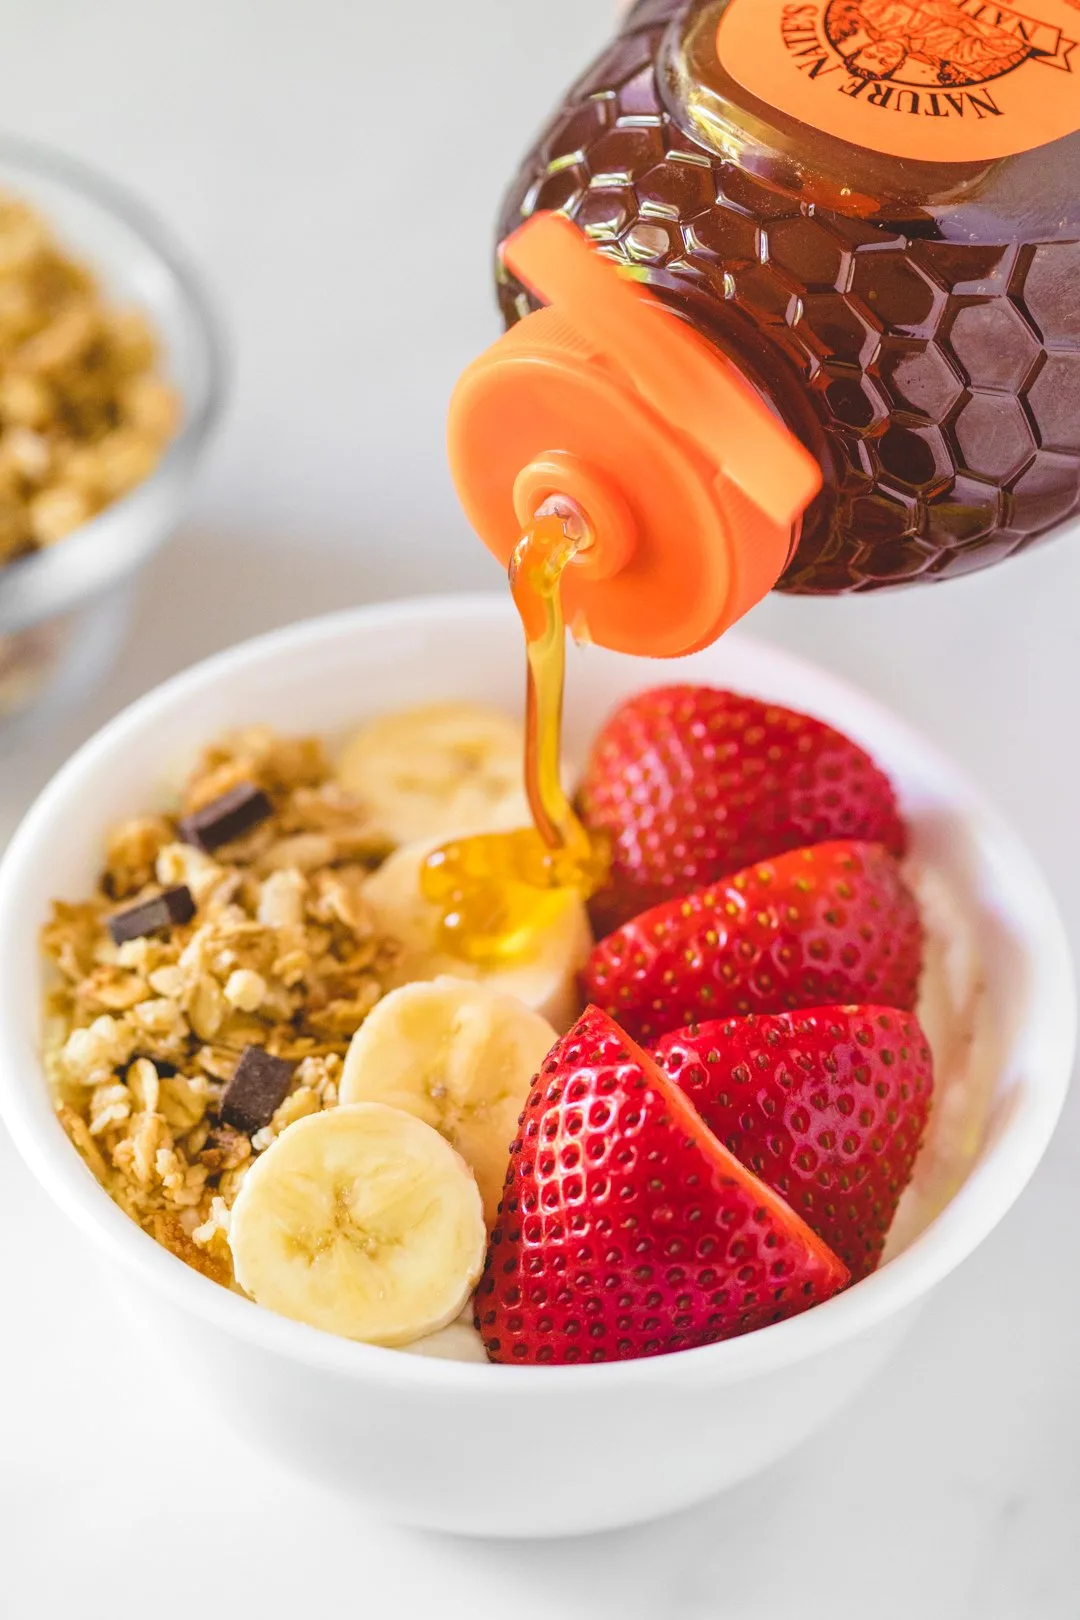 Fruit & Honey Breakfast Power Bowl